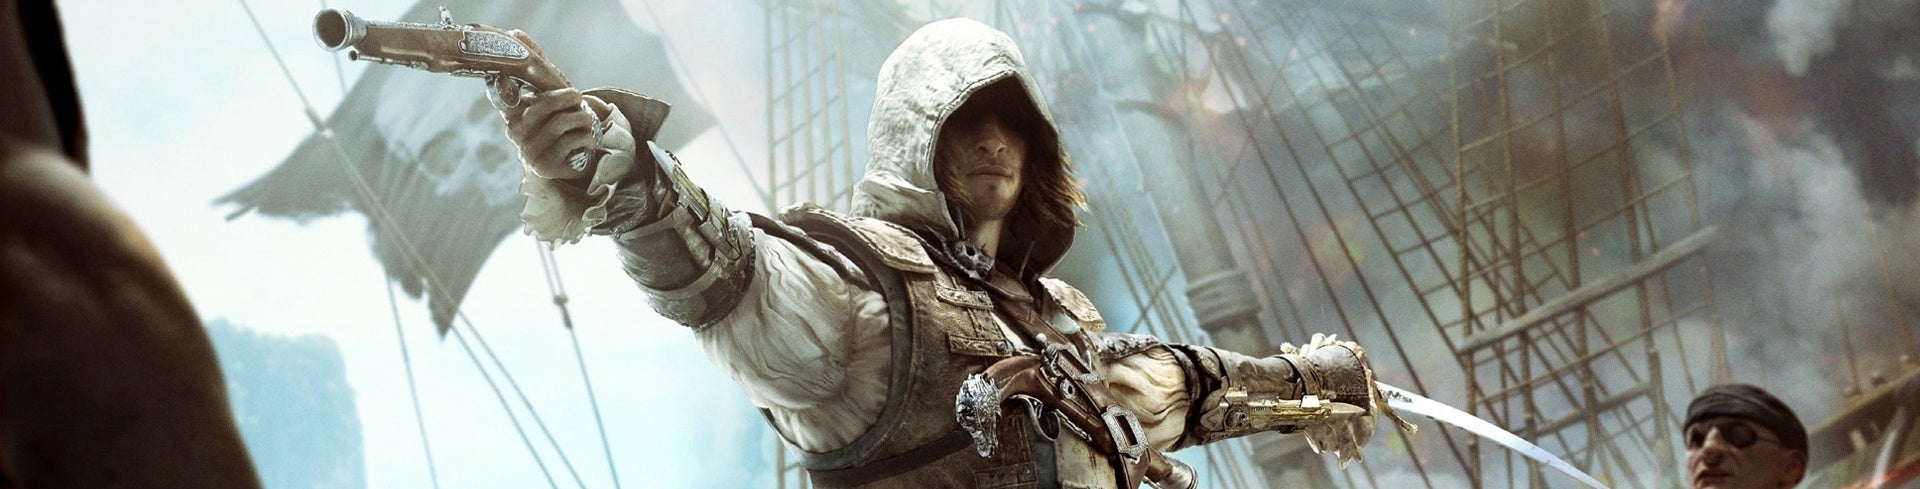 Immagine di Assassin's Creed 4: Black Flag - La Soluzione Completa